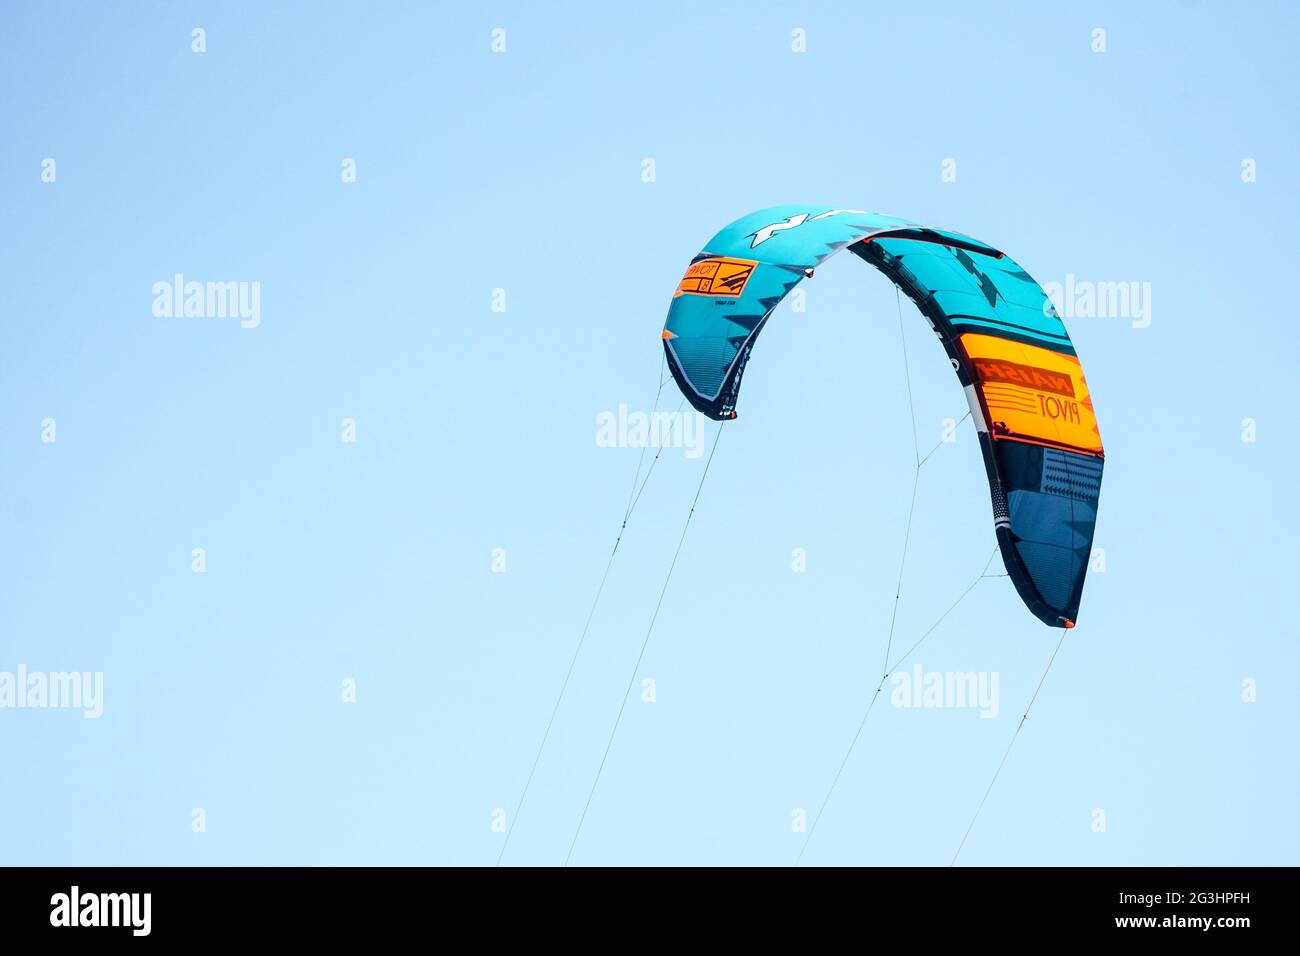 Ein offener Drachen oder Fallschirm gegen einen hellblauen Himmel Konzept Kiteboarding, Kitesurfen, Sportausrüstung, Adrenalinsport, Wettbewerb Stockfoto